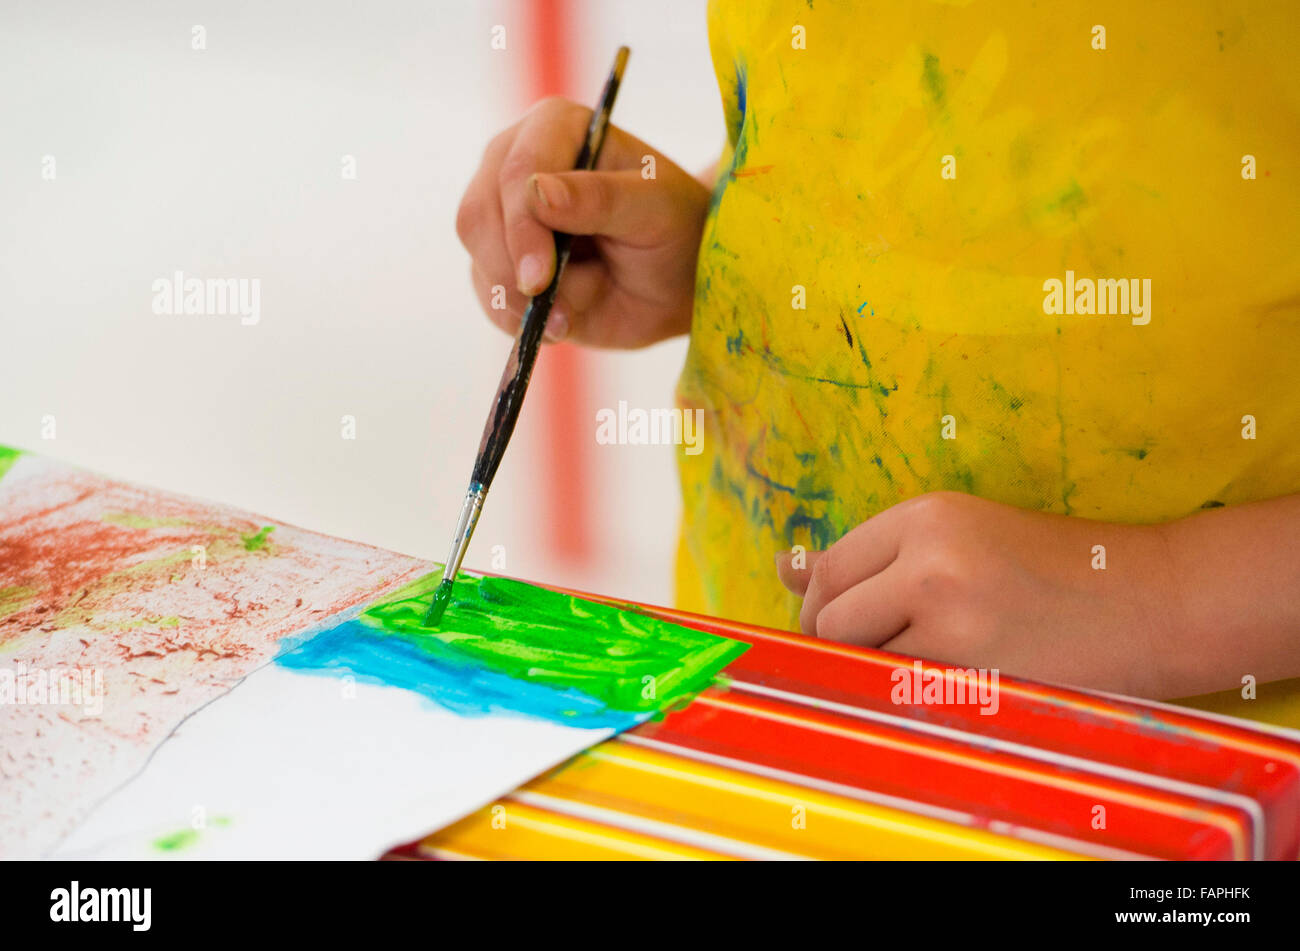 Los niños que aprenden habilidades creativas mientras realiza actividades de arte y artesanía en la escuela. Foto de stock